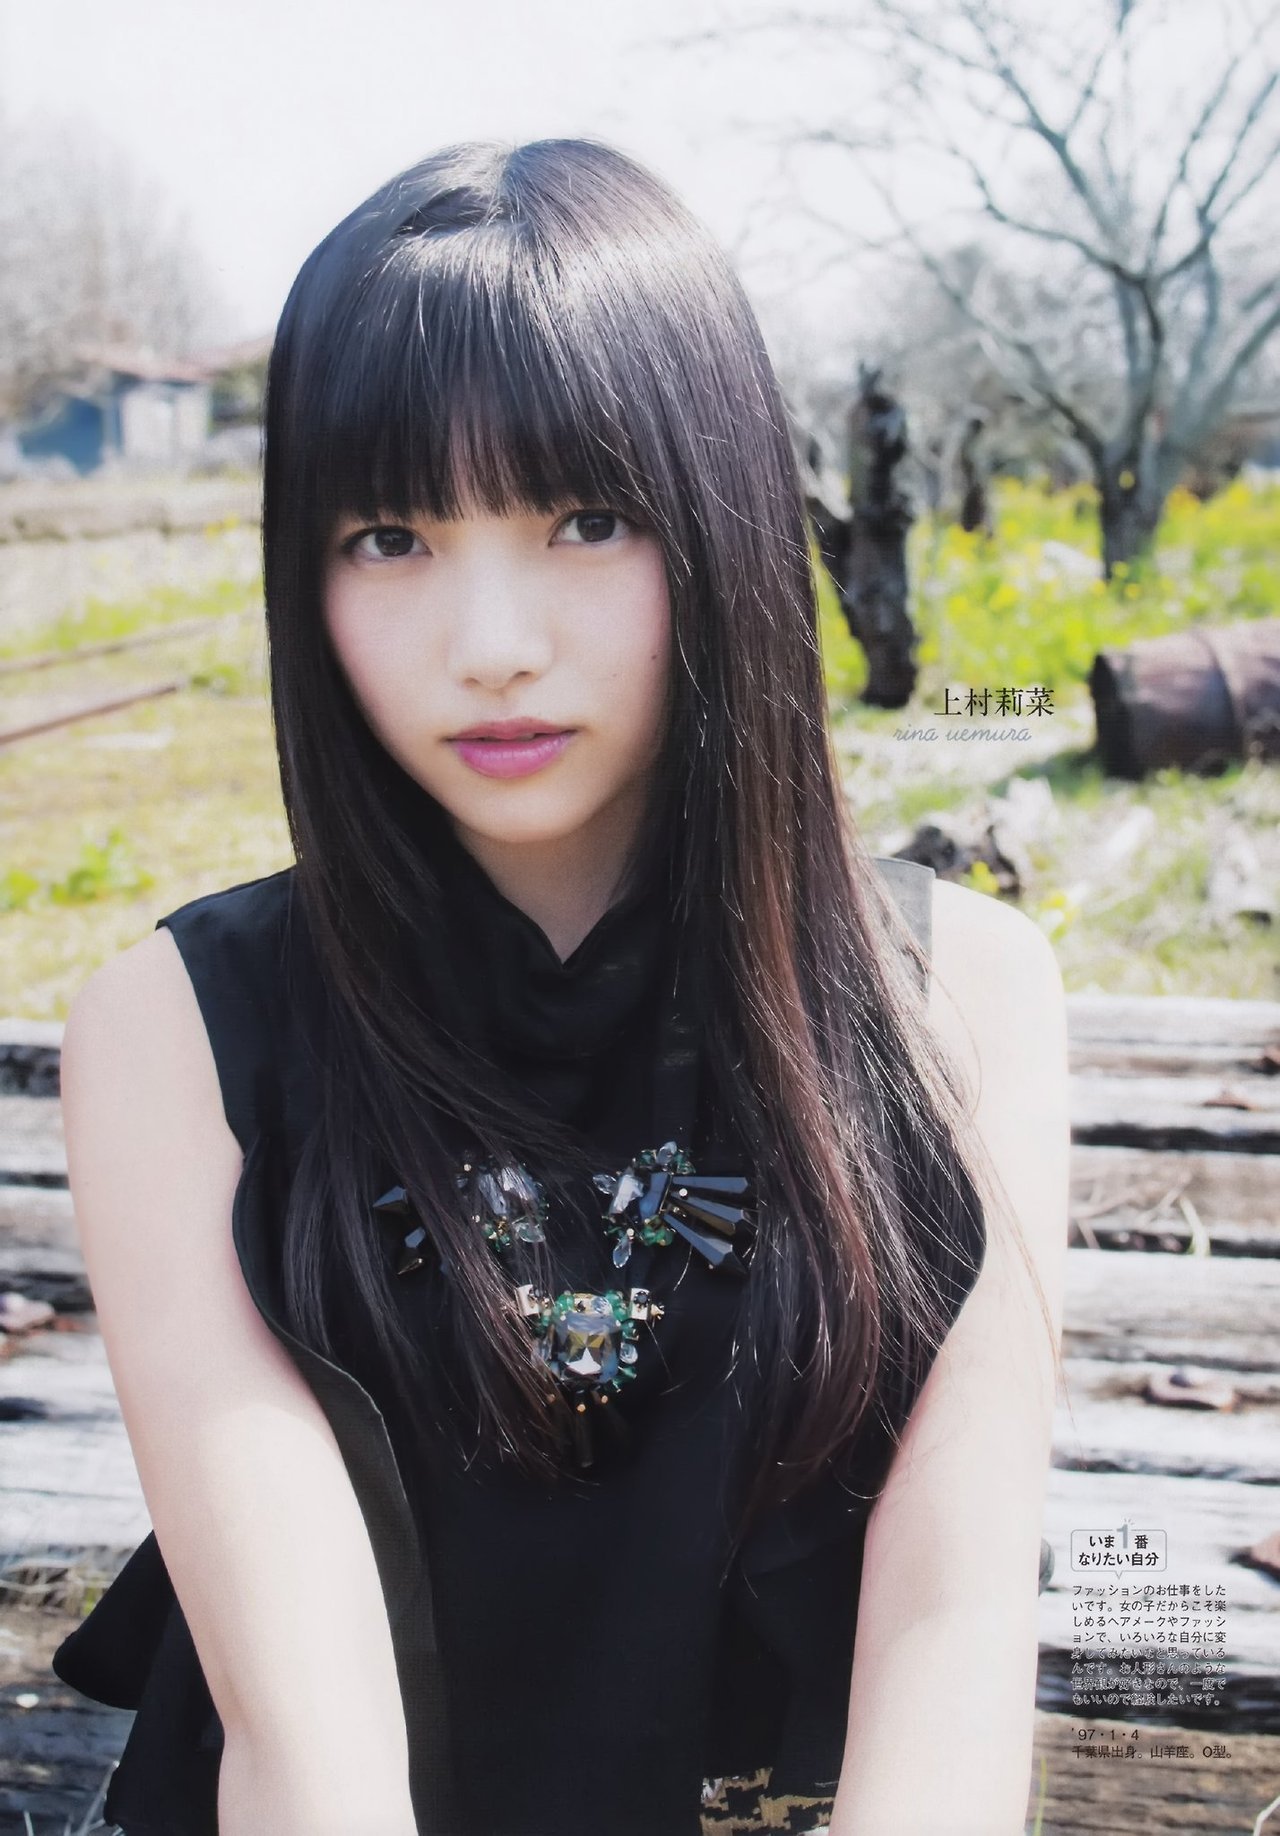 欅坂46 日向坂46メンバーのあだ名一覧まとめ 中国でのニックネームも Aikru アイクル かわいい女の子の情報まとめサイト